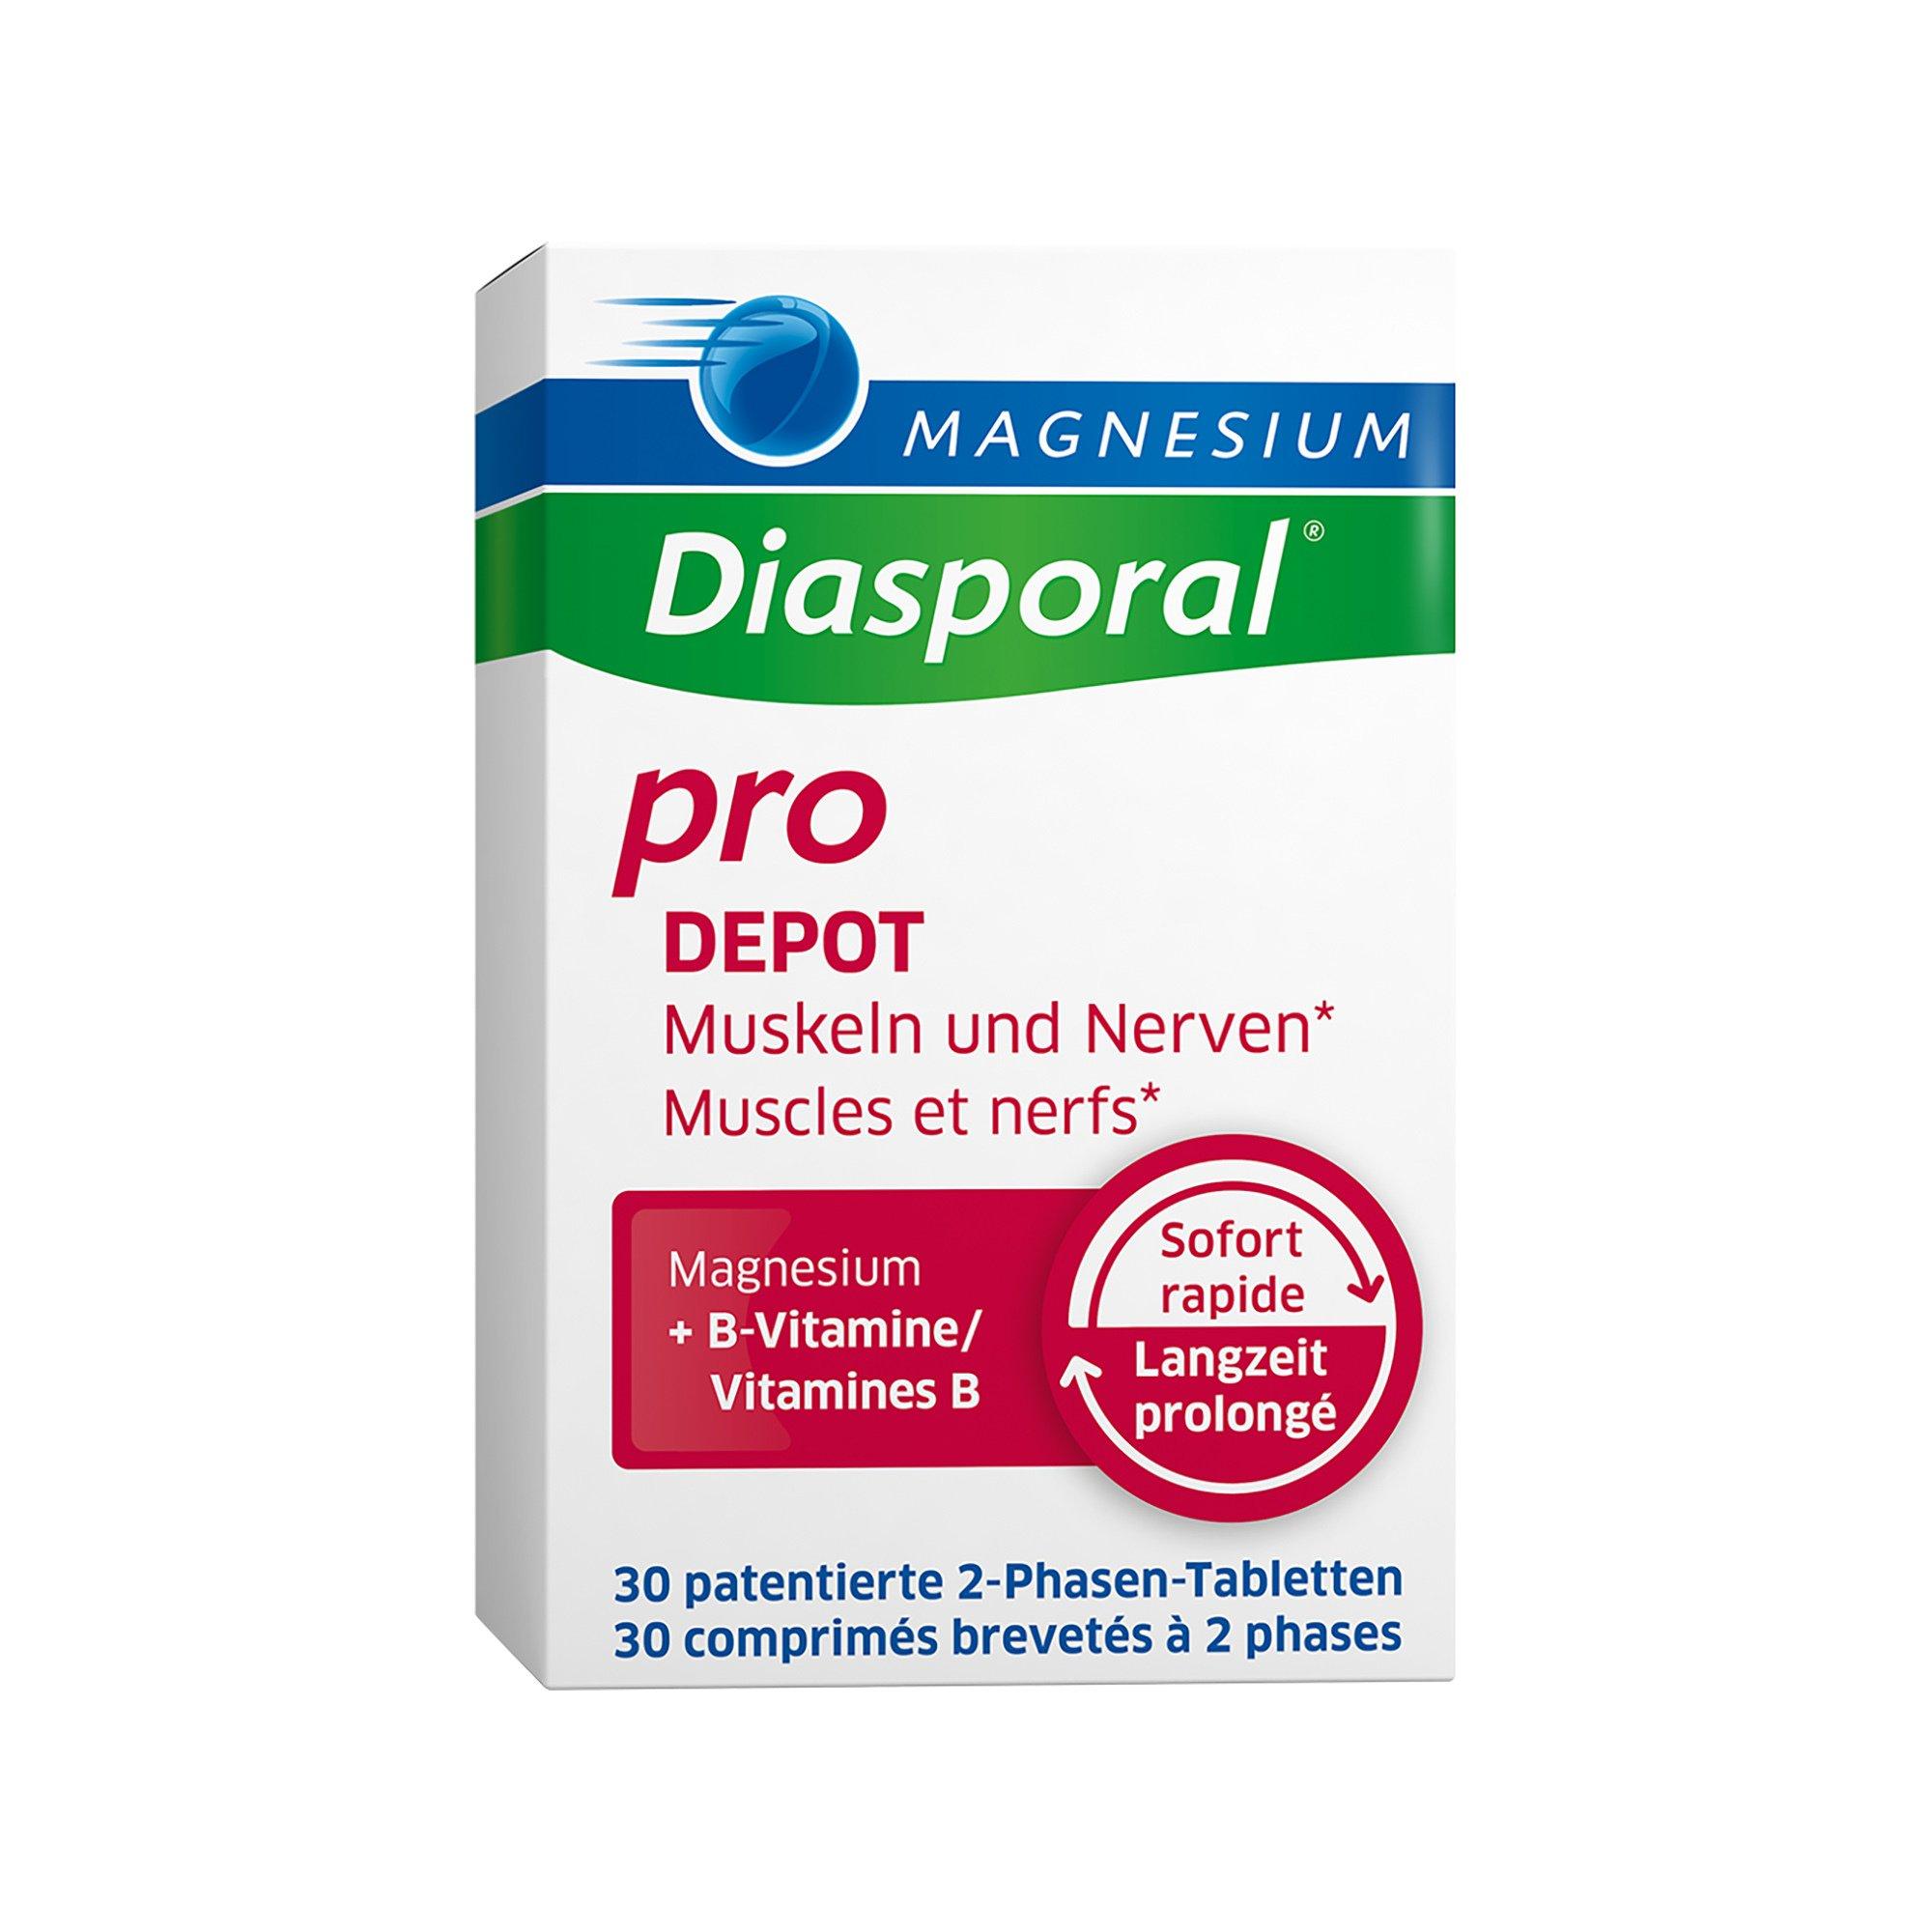 Image of Diasporal Magnesium Depot Tabletten - 30 pezzi